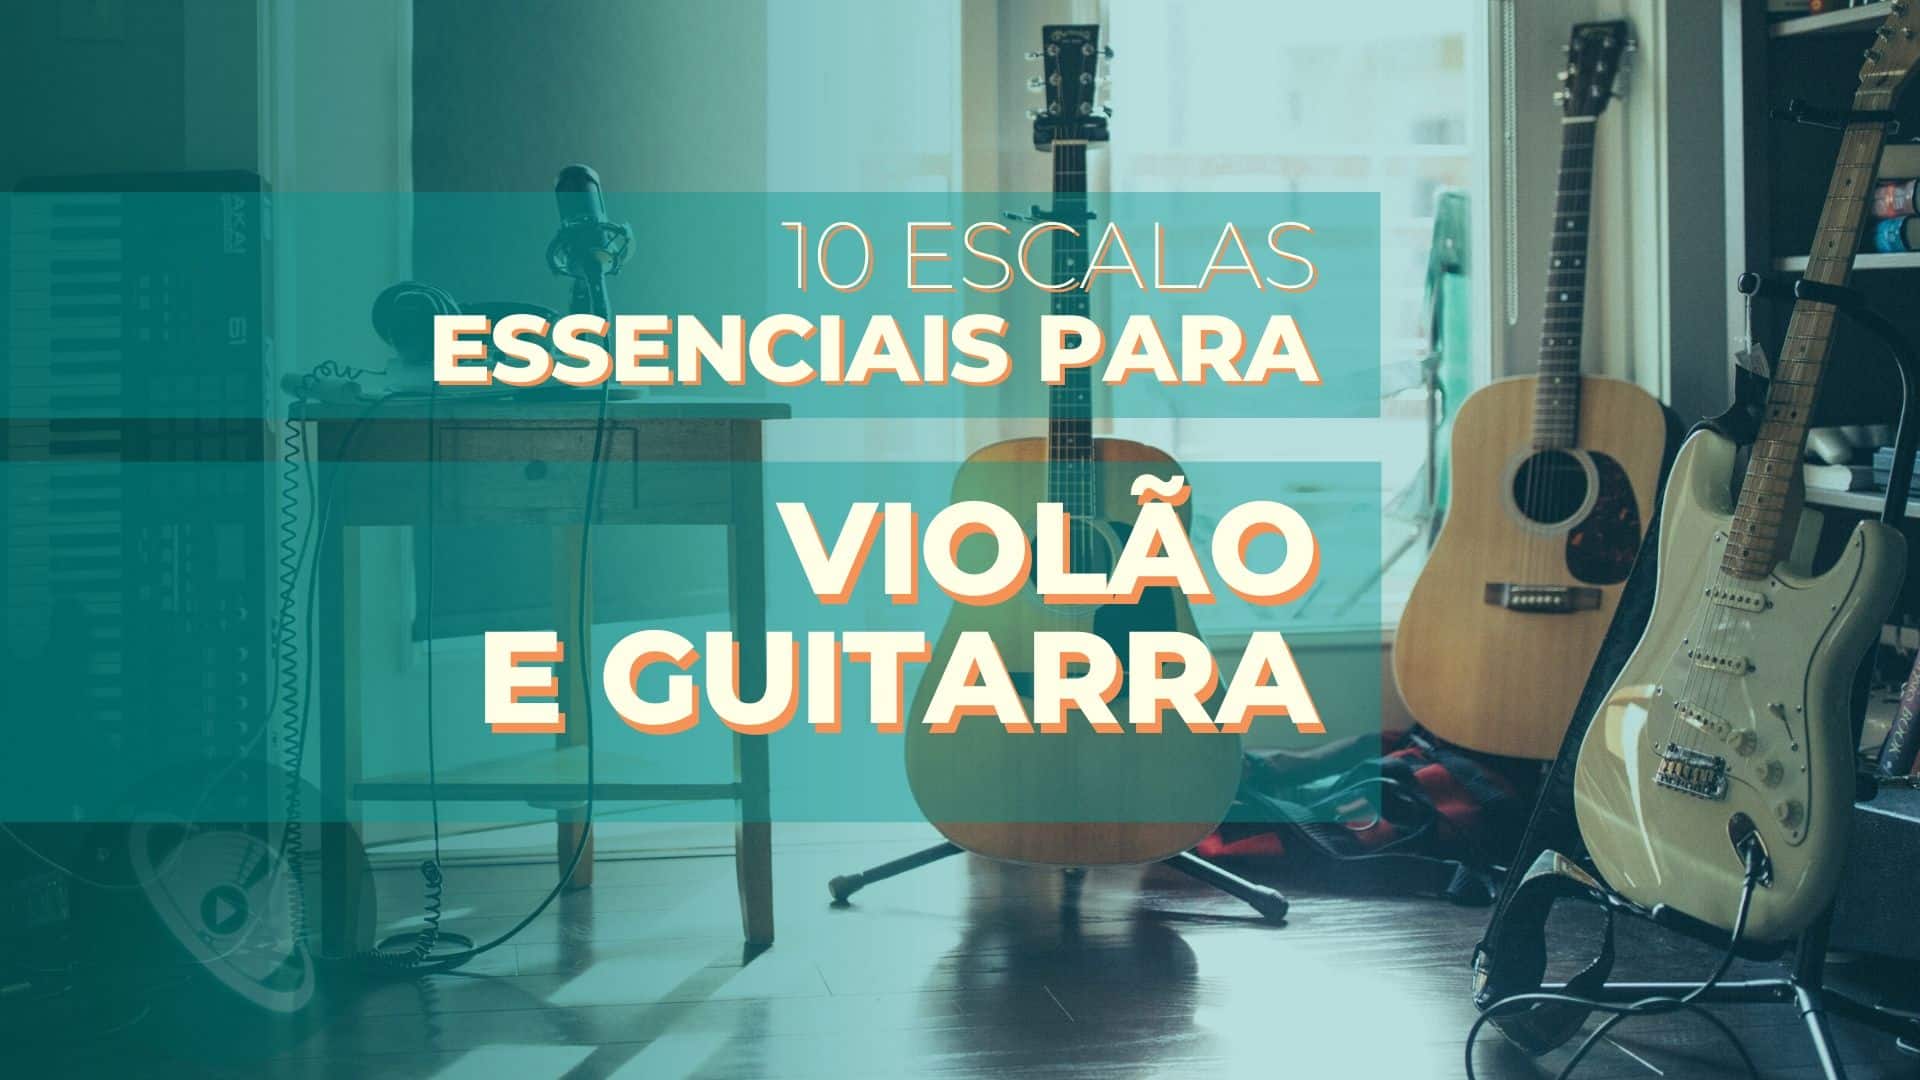 10 Escalas Essenciais para Violão e Guitarra.